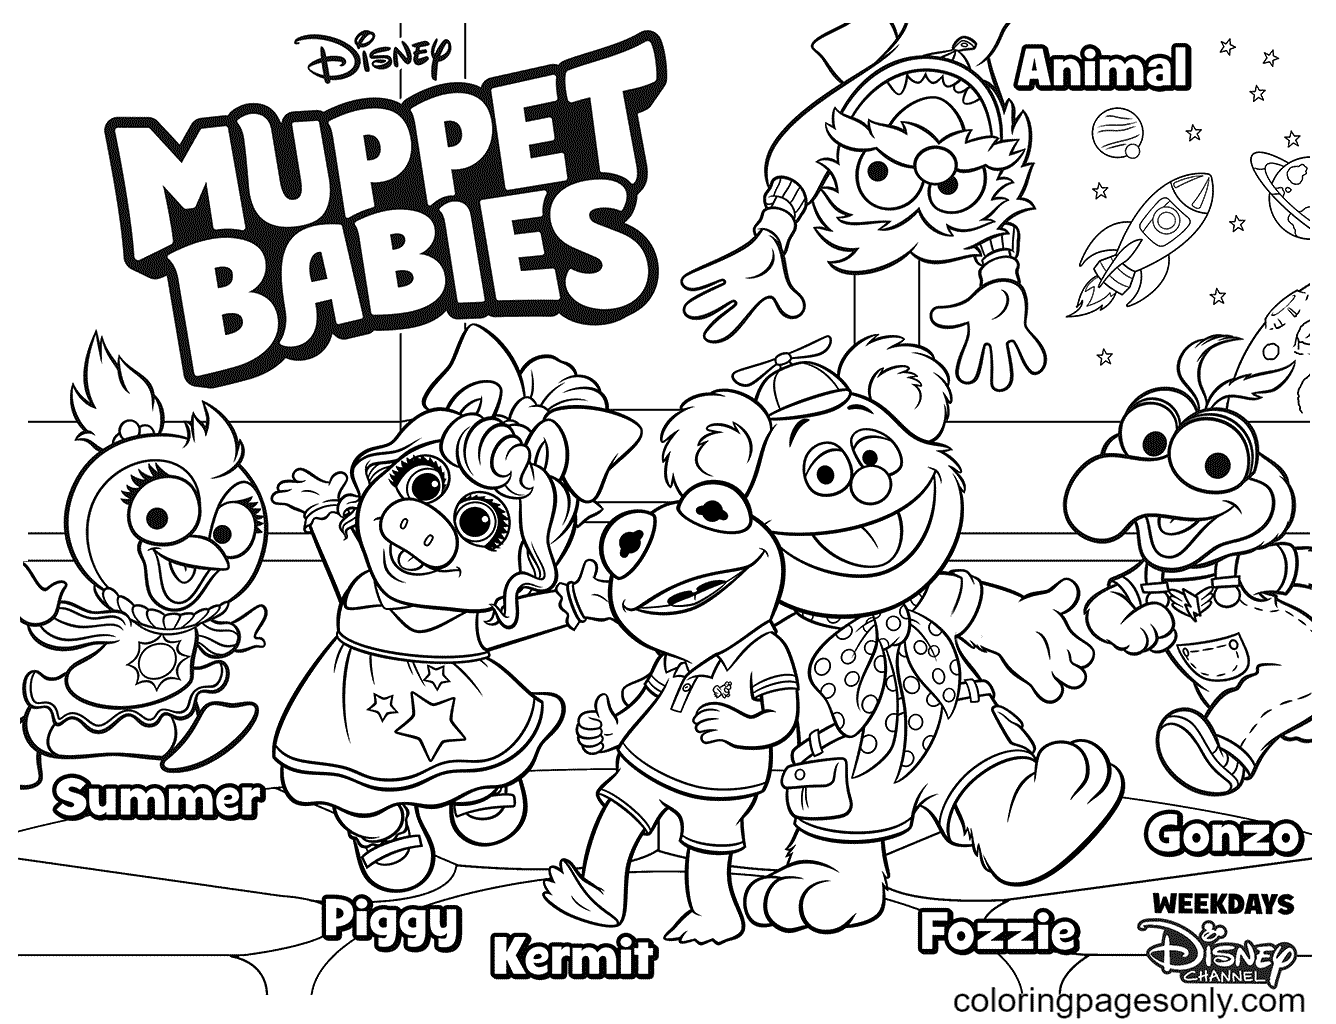 Disney Muppet Babies de Muppet Babies